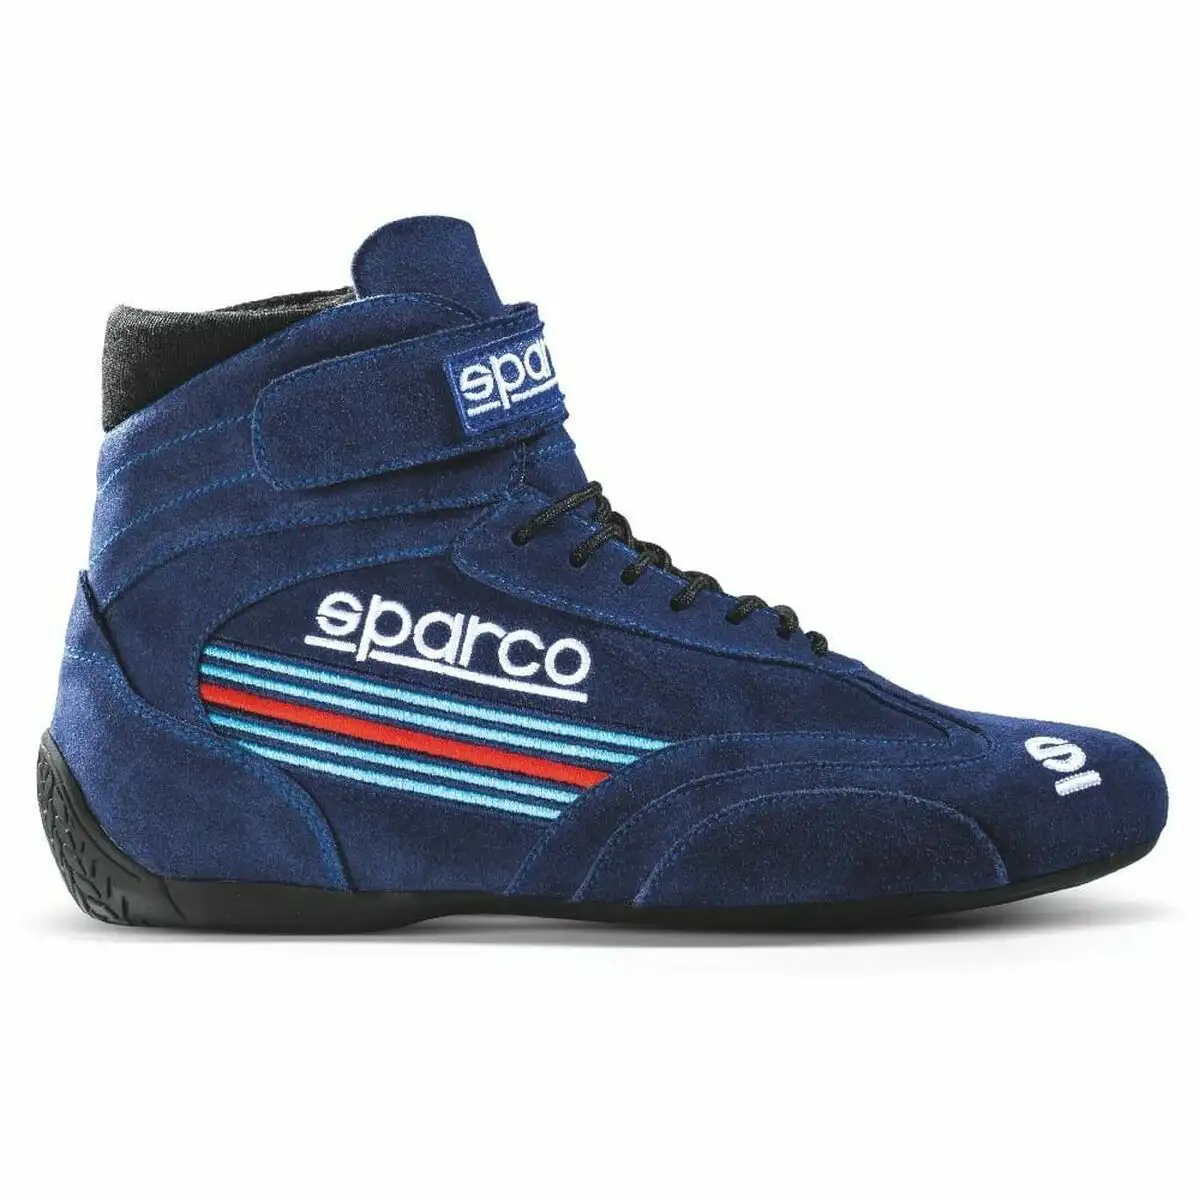 Chaussures de course sparco top bleu taille 44_6253. Bienvenue sur DIAYTAR SENEGAL - Là où Chaque Objet a une Âme. Plongez dans notre catalogue et trouvez des articles qui portent l'essence de l'artisanat et de la passion.